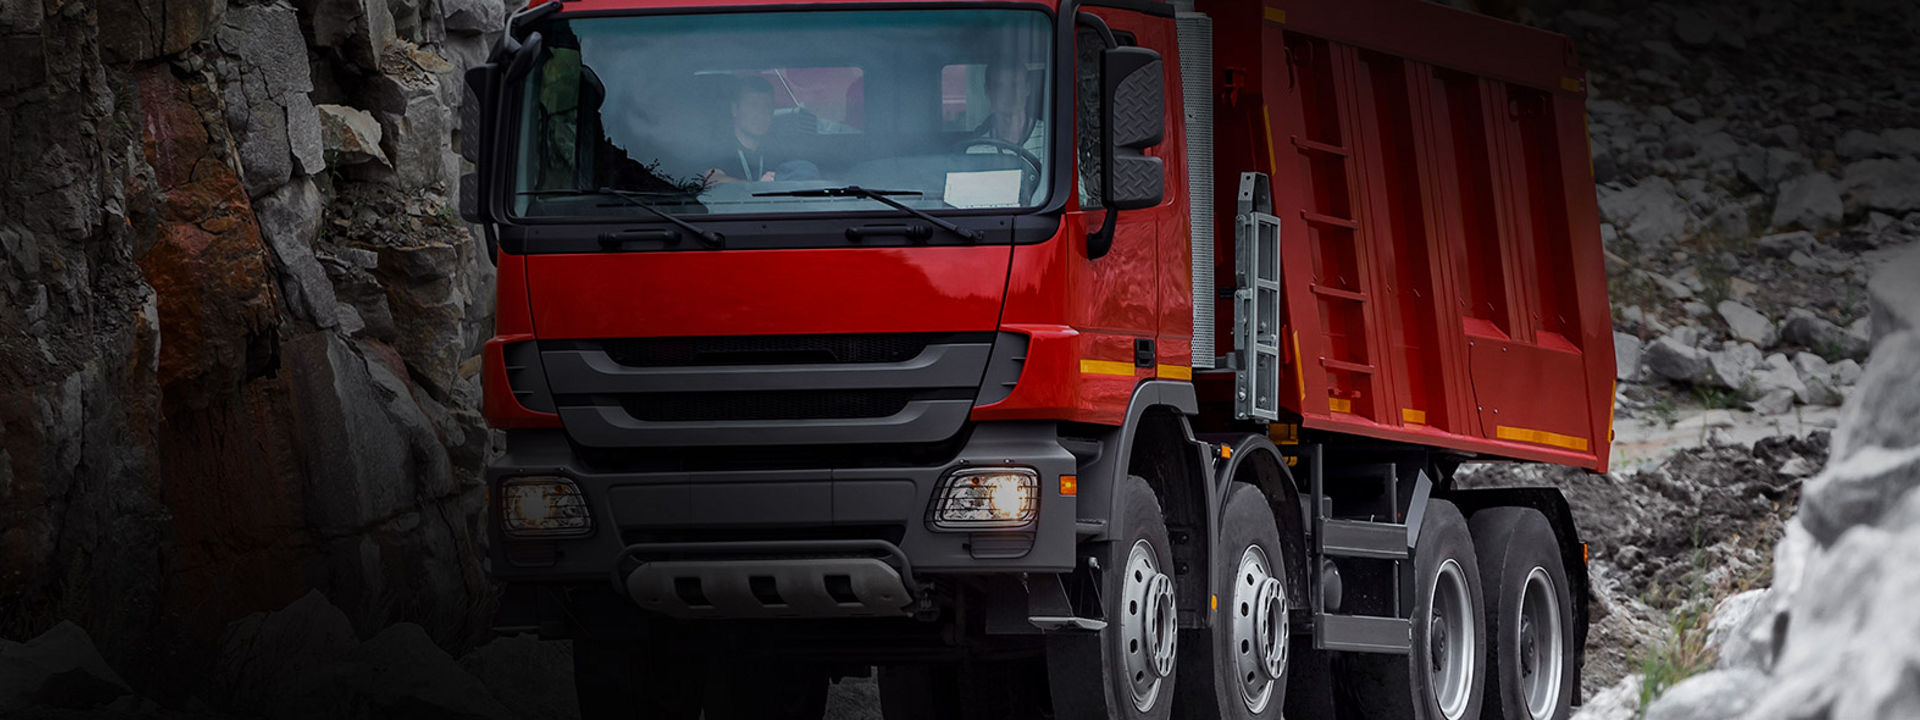 A képen egy teherautó eleje látható egy építkezésnél a Bridgestone nagy igénybevételre, aszfaltra/terepre szánt abroncsaival.